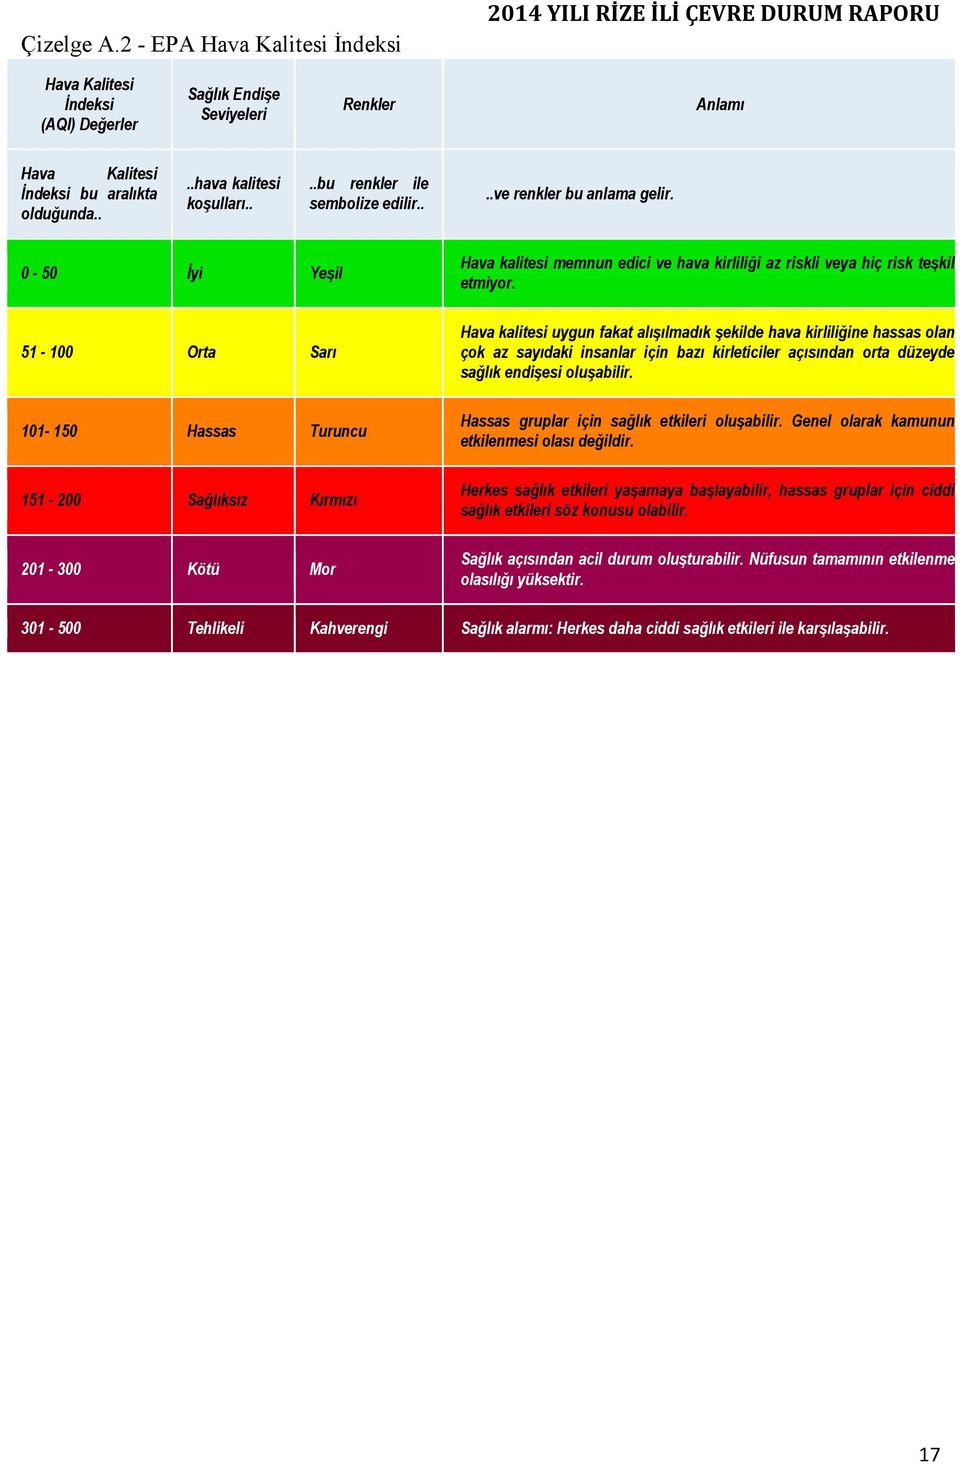 0-50 Đyi Yeşil 51-100 Orta Sarı 101-150 Hassas Turuncu 151-200 Sağlıksız Kırmızı 201-300 Kötü Mor Hava kalitesi memnun edici ve hava kirliliği az riskli veya hiç risk teşkil etmiyor.